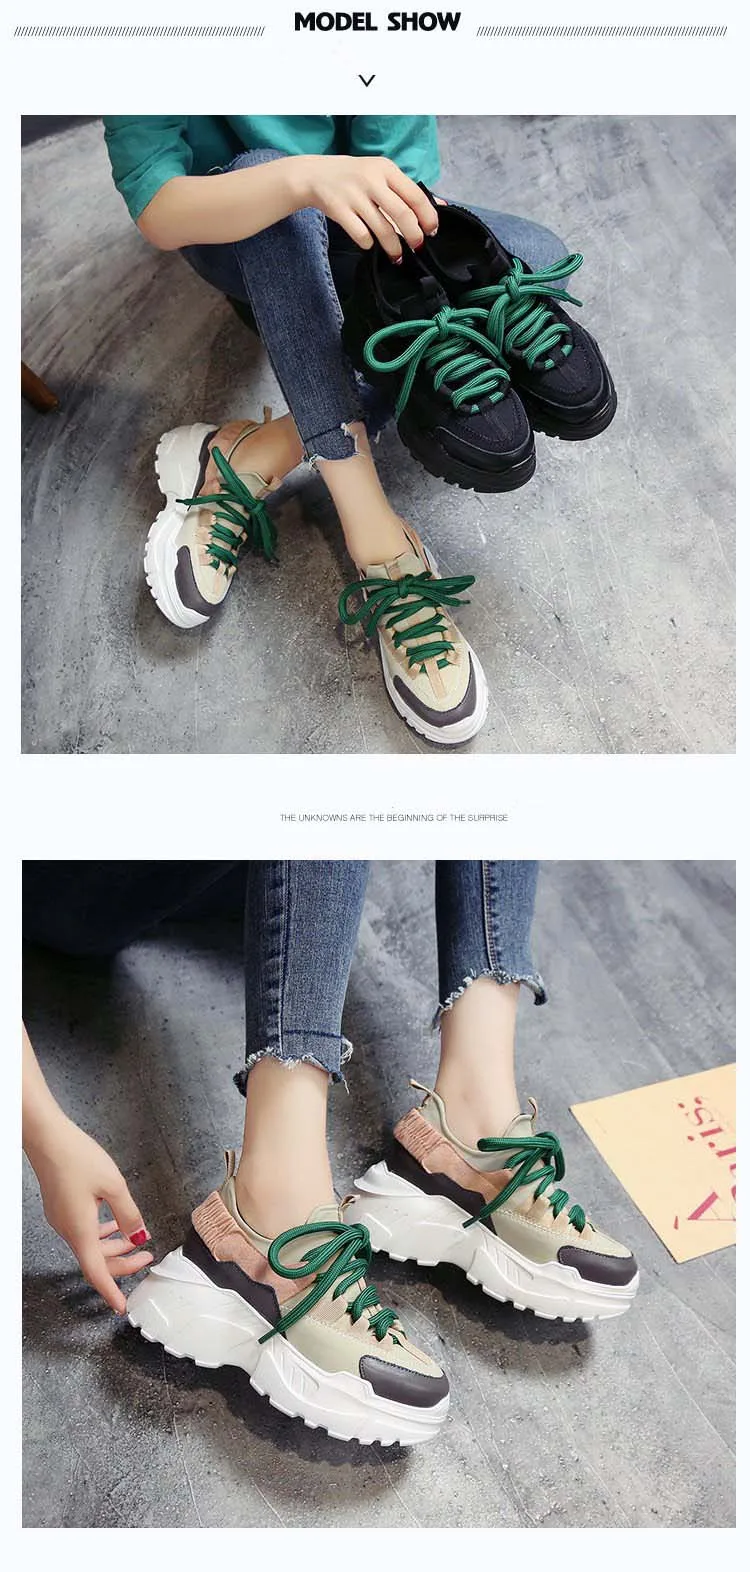 Sooneeya/Коллекция года; сезон весна-осень; женская повседневная обувь; удобная обувь на платформе; женские кроссовки; Chaussure Femme; SX1450